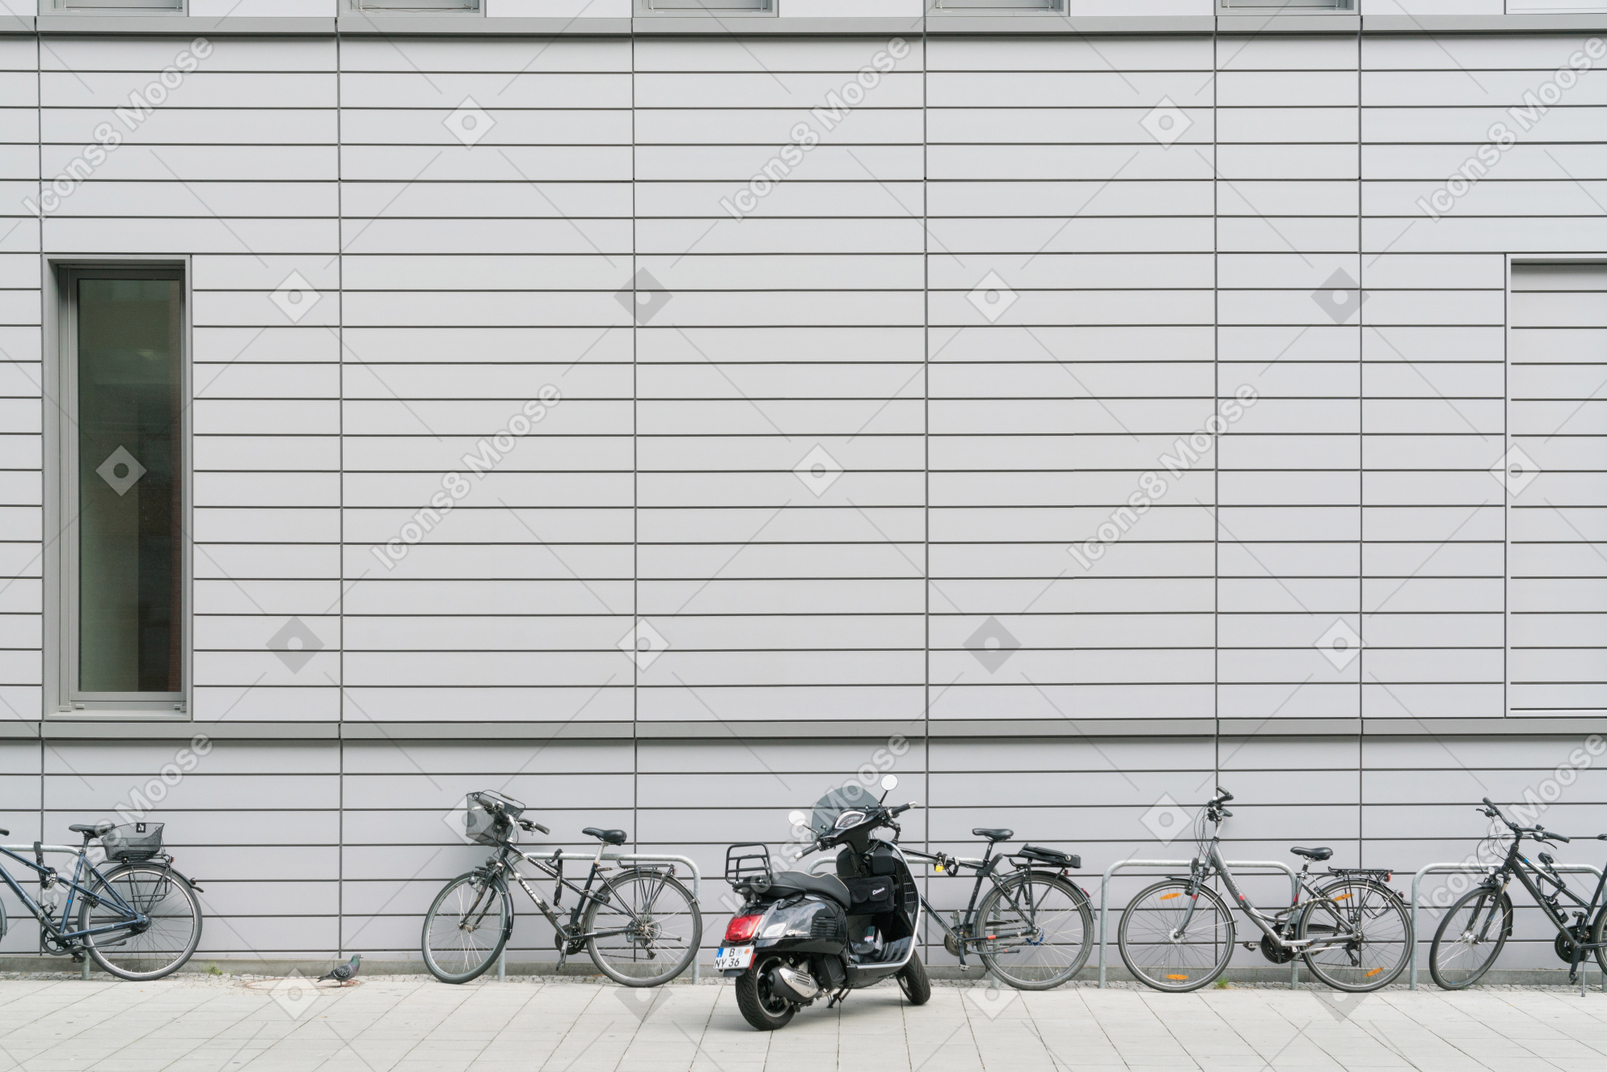 Велосипеды и скутер припаркованы перед зданием